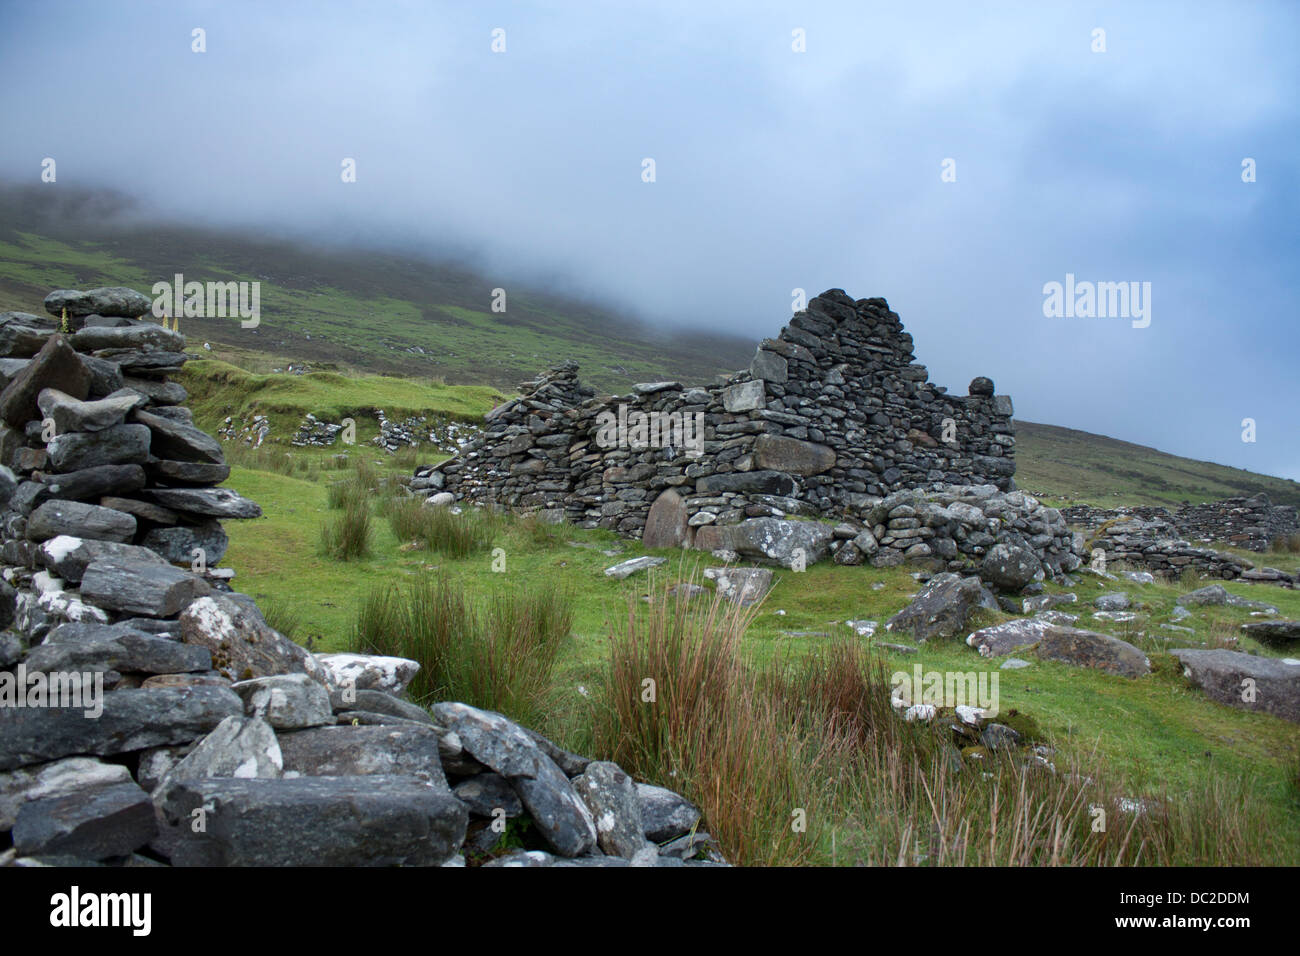 Deserta Slievemore villaggio abbandonato dopo la patata carestia nel 1850s Achill Island County Mayo Eire Repubblica di Irlanda Foto Stock